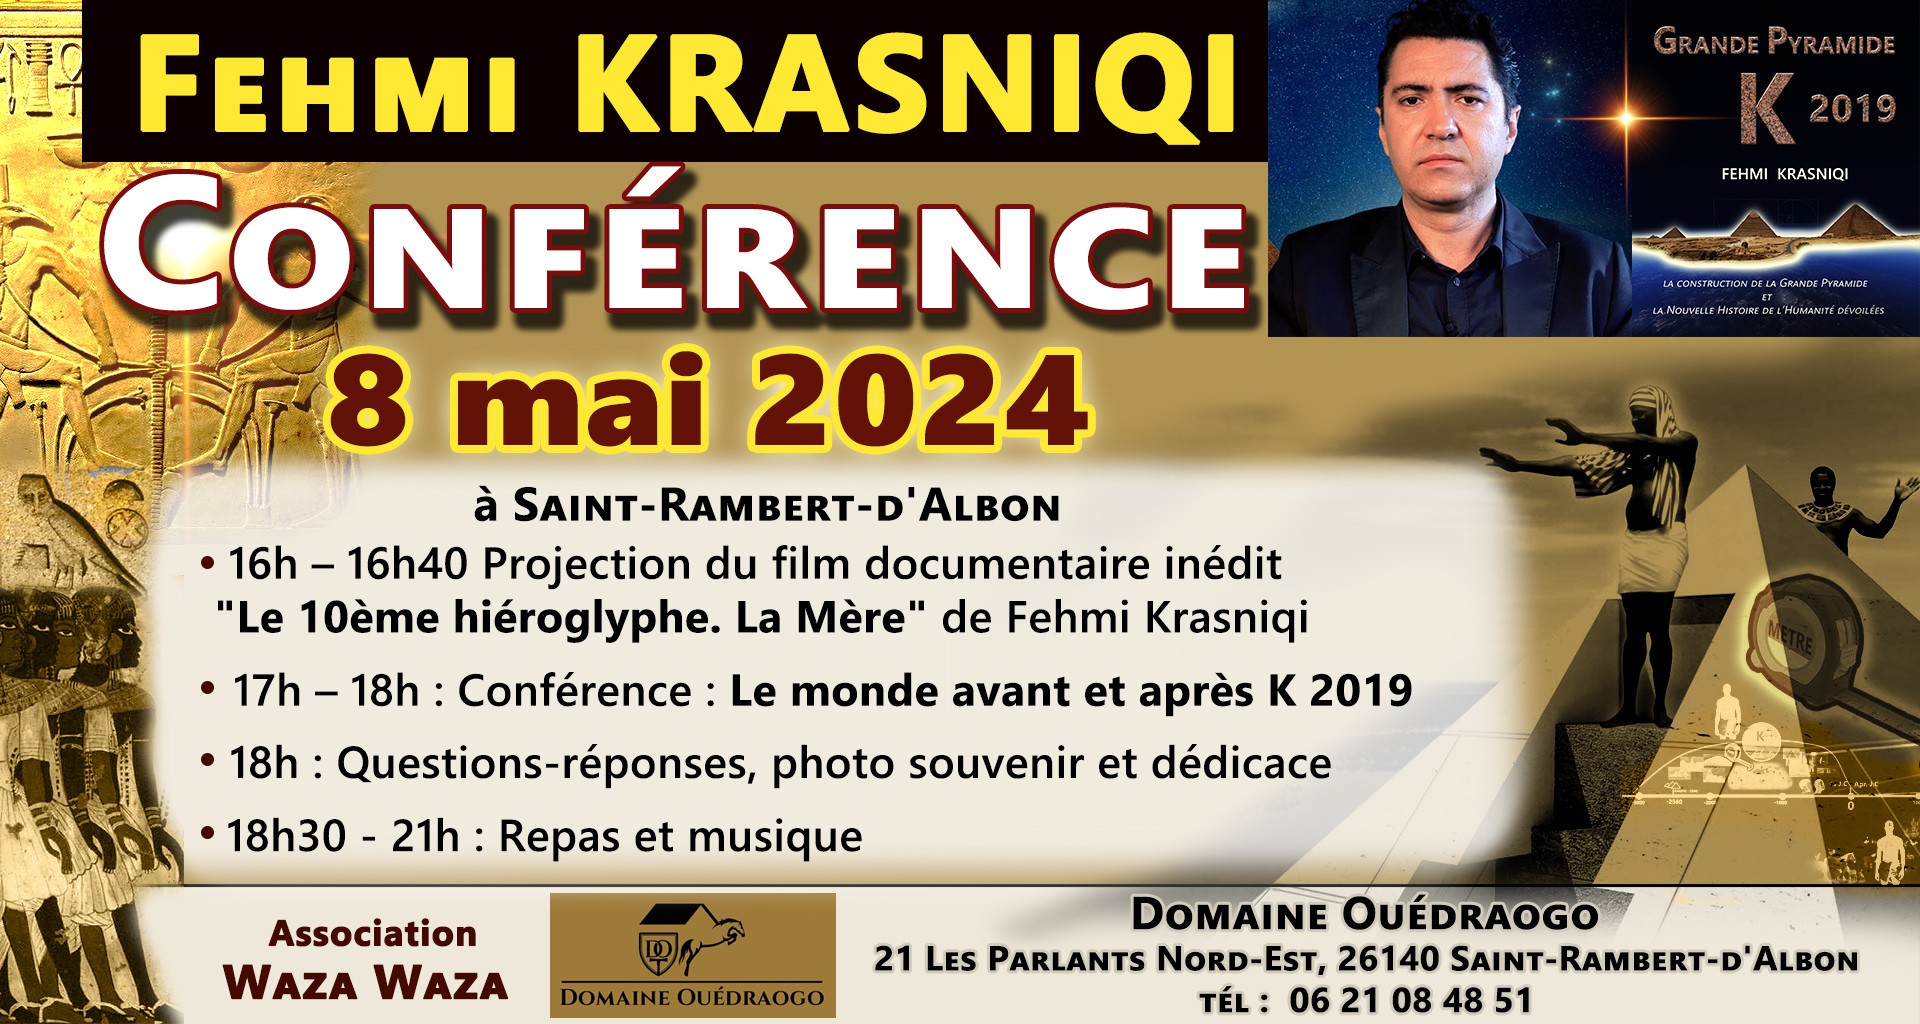 Lire la suite à propos de l’article Conférence de Fehmi Krasniqi le 8 mai 2024